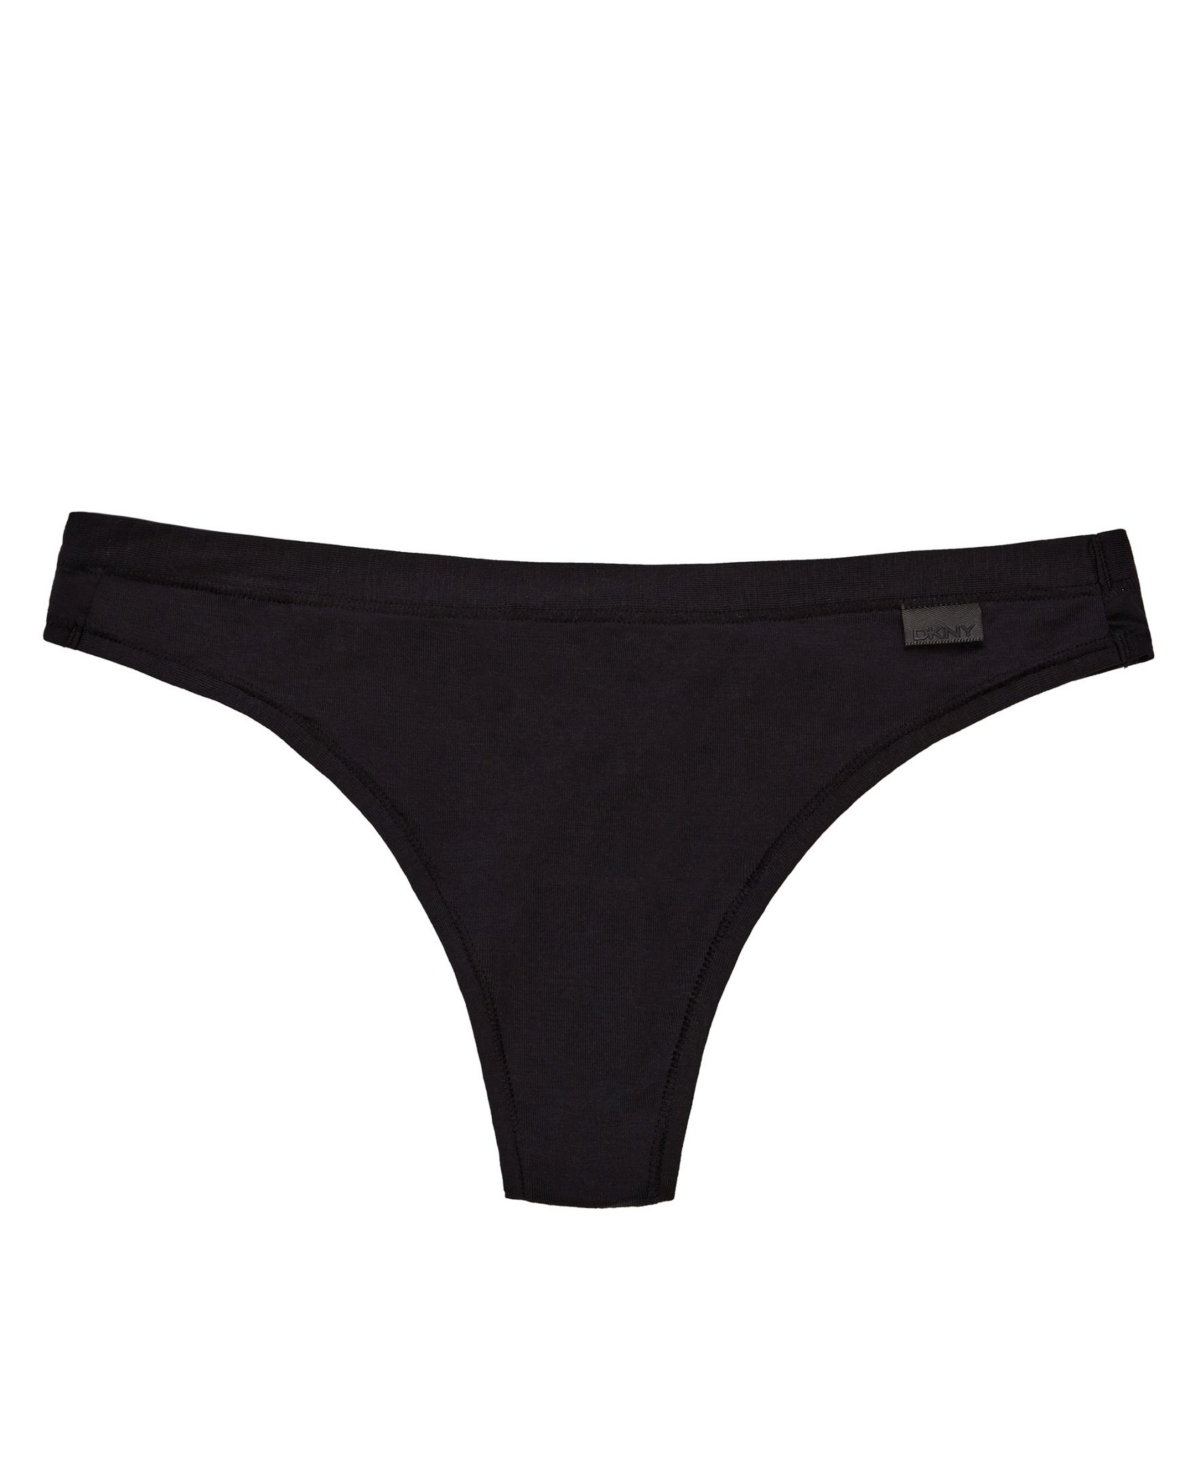 DKNY Litewear Cut Anywear Logo Thong Underwear DK5026 - Macy's